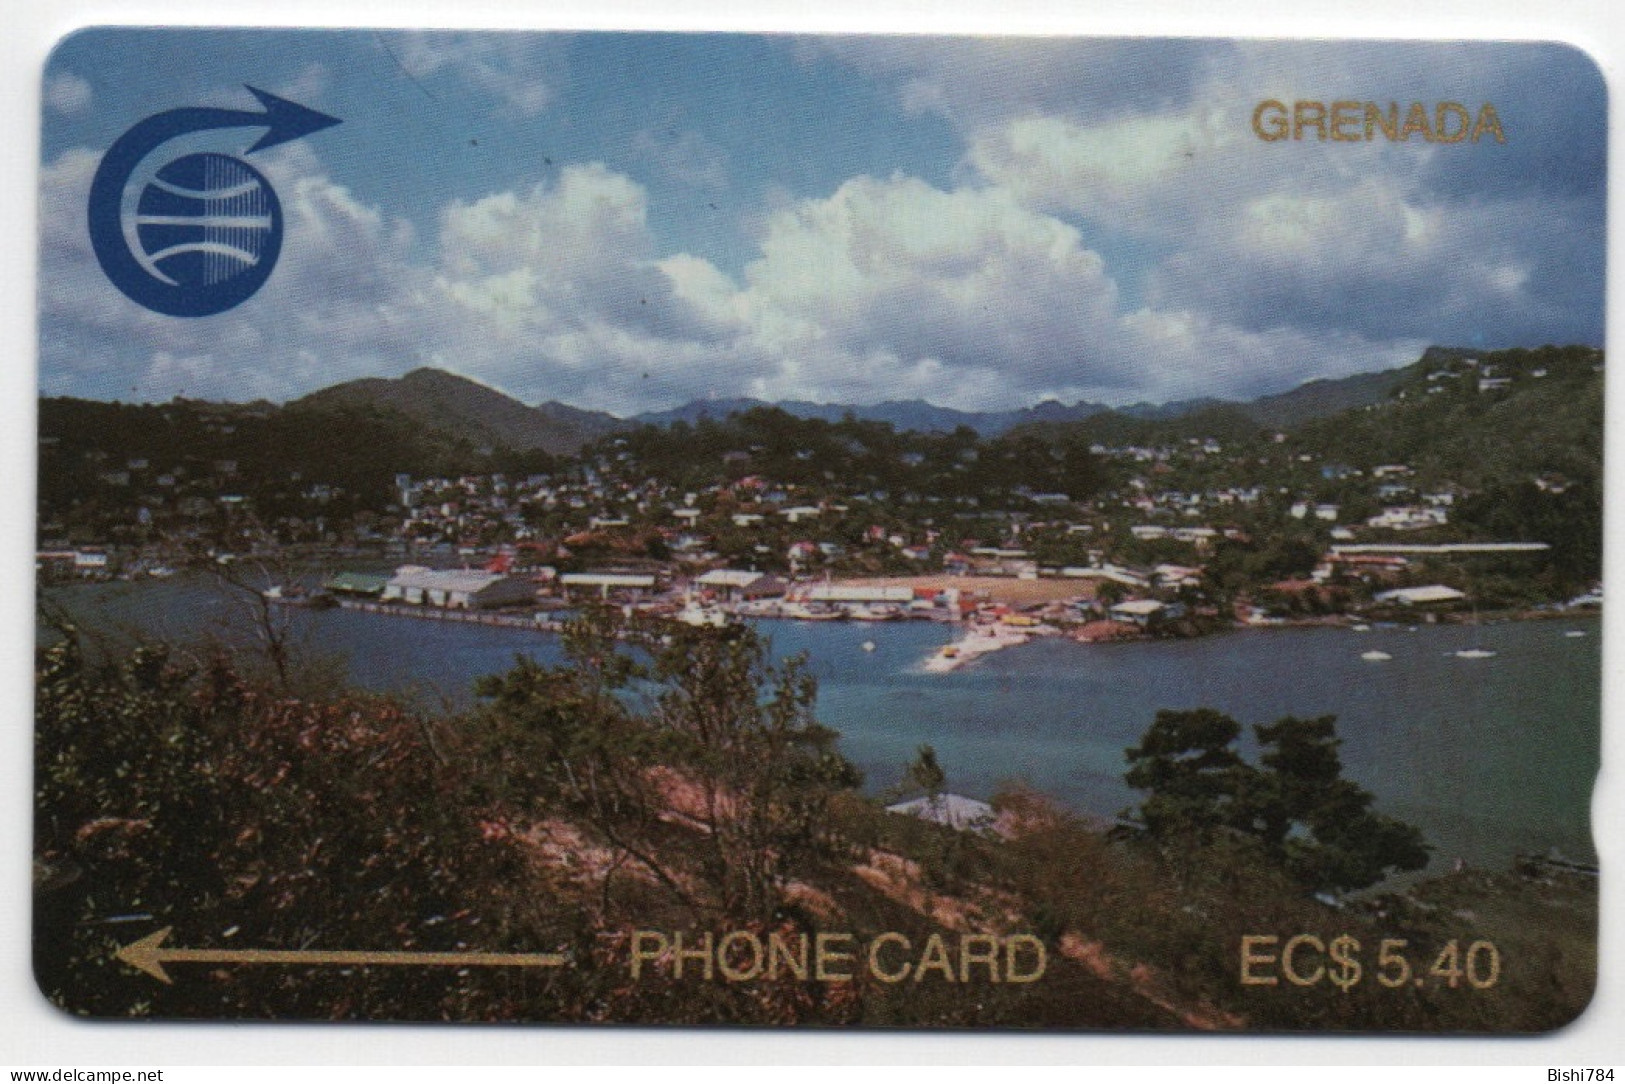 Grenada - View Of St. George’s $5.40 (Windward Island Pack) - 2CGRA - Grenade